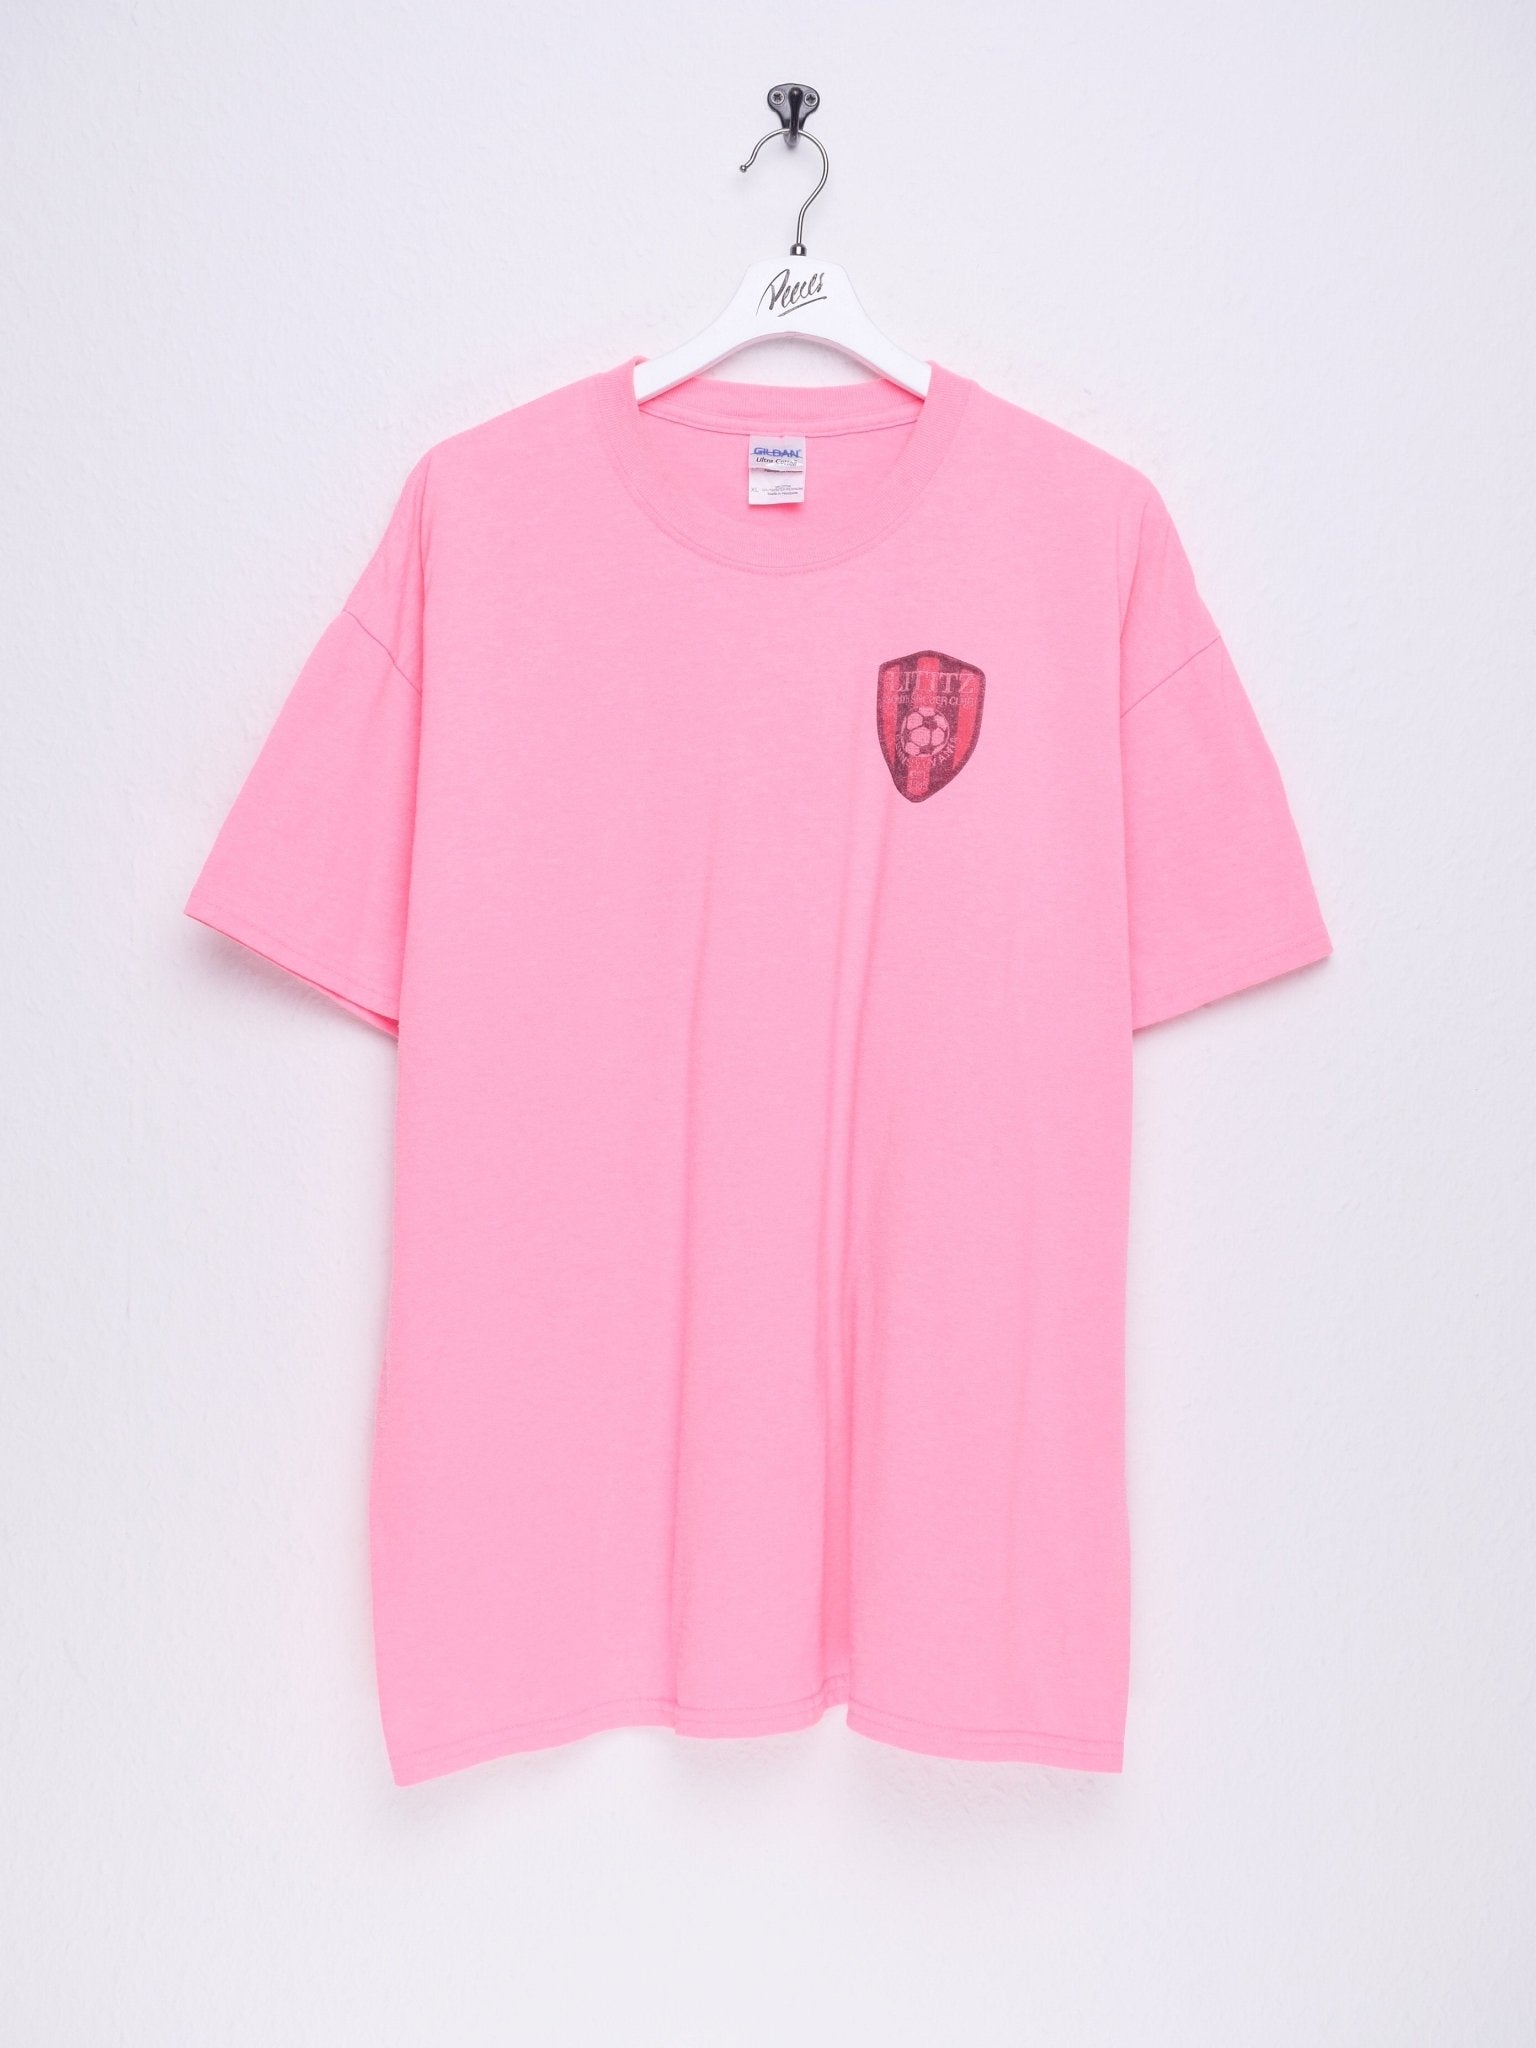 Soccer Lititz Pennsylvania printed Logo neon pink Shirt - Peeces